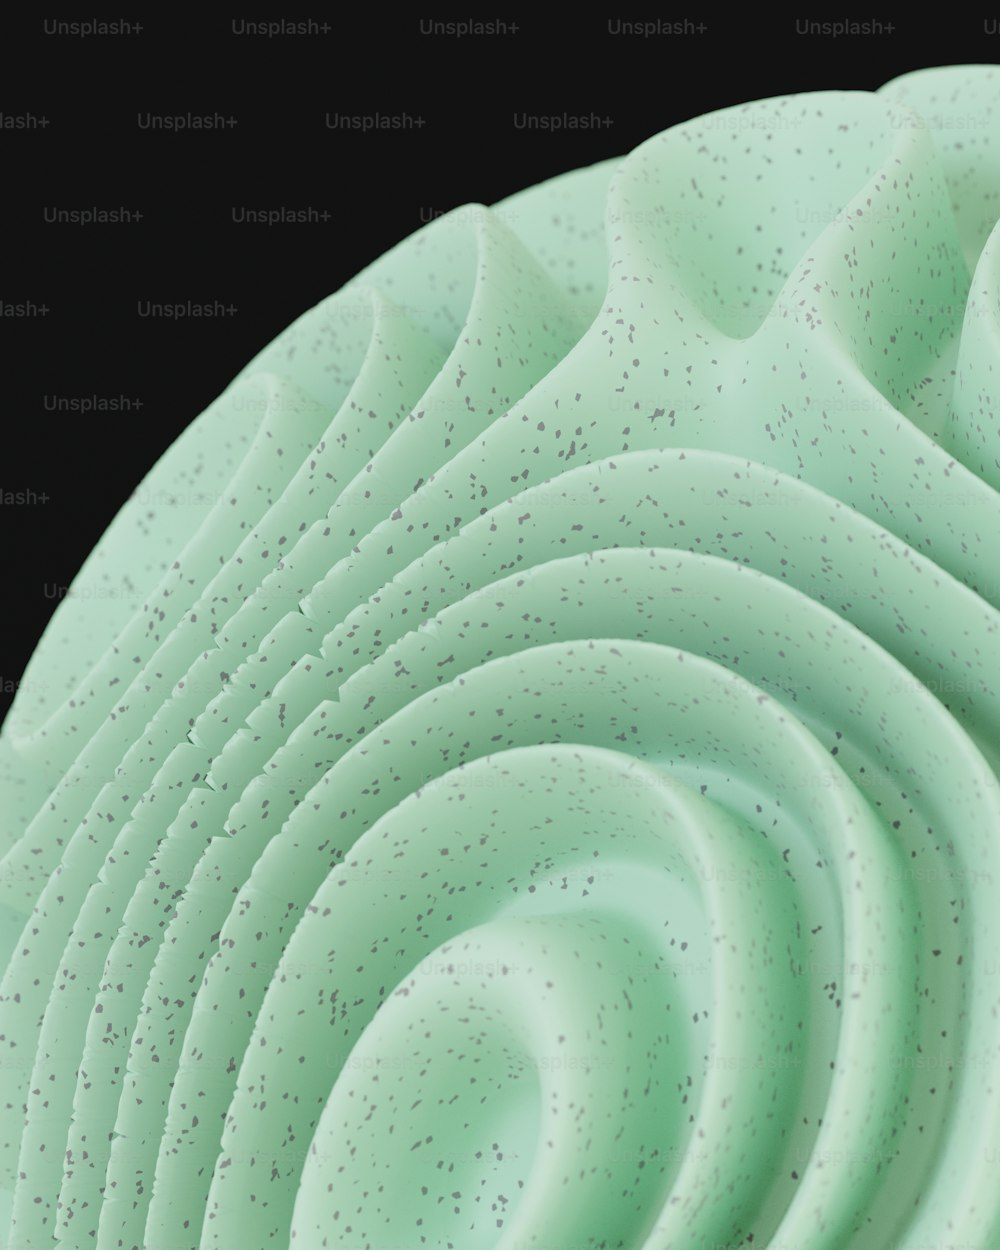 30k+ Asphalt Texture Pictures  Download Free Images on Unsplash